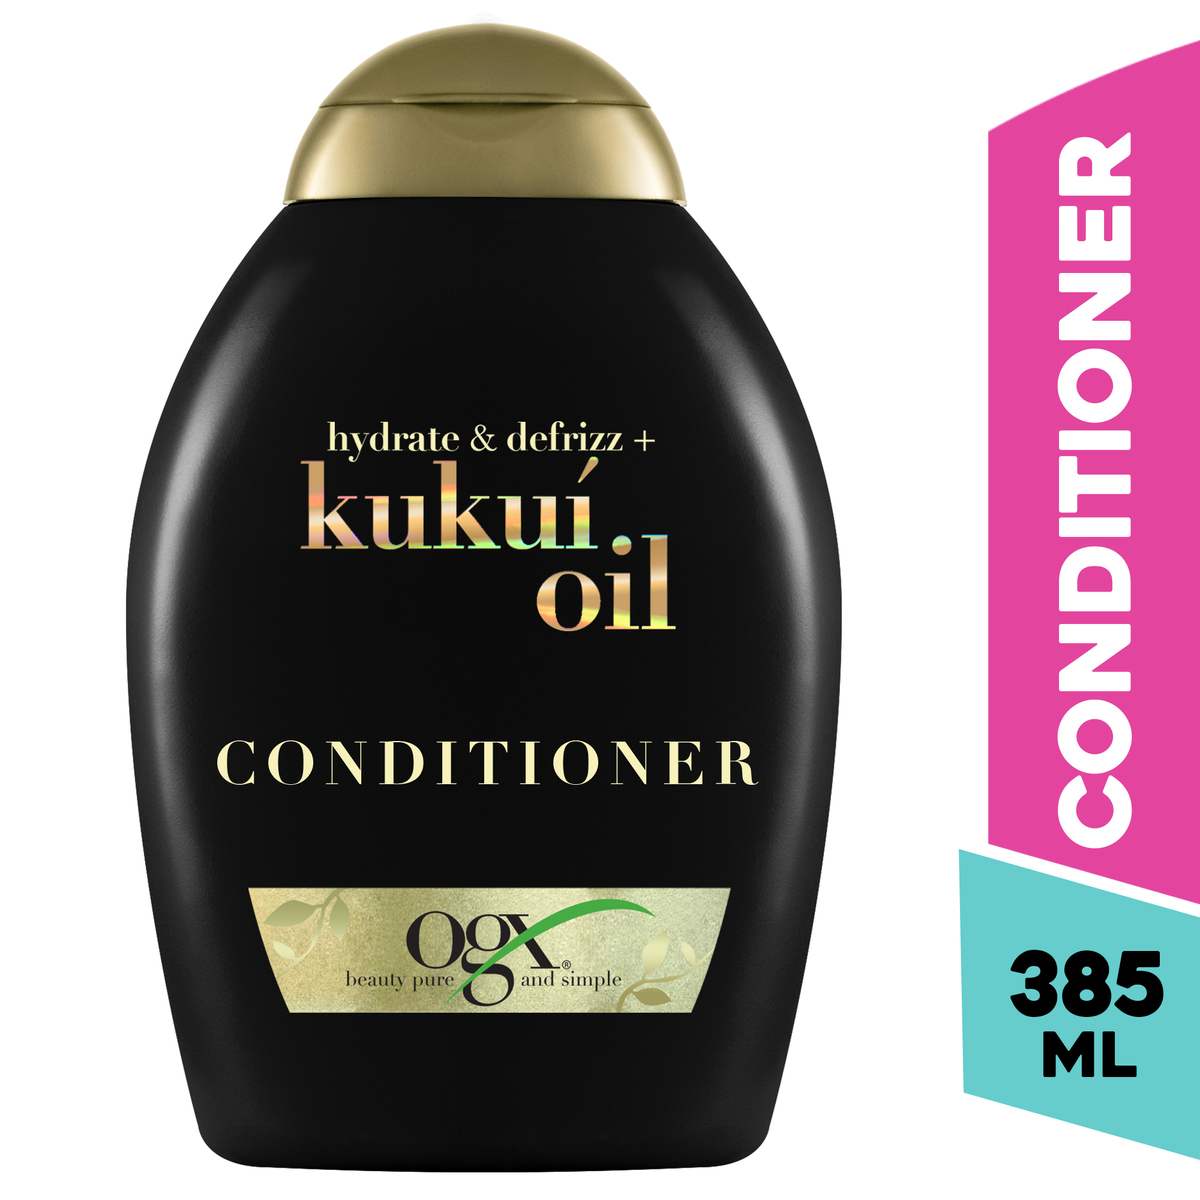 Ogx Conditioner Hydrate & Defrizz + Kukui Oil 385 ml